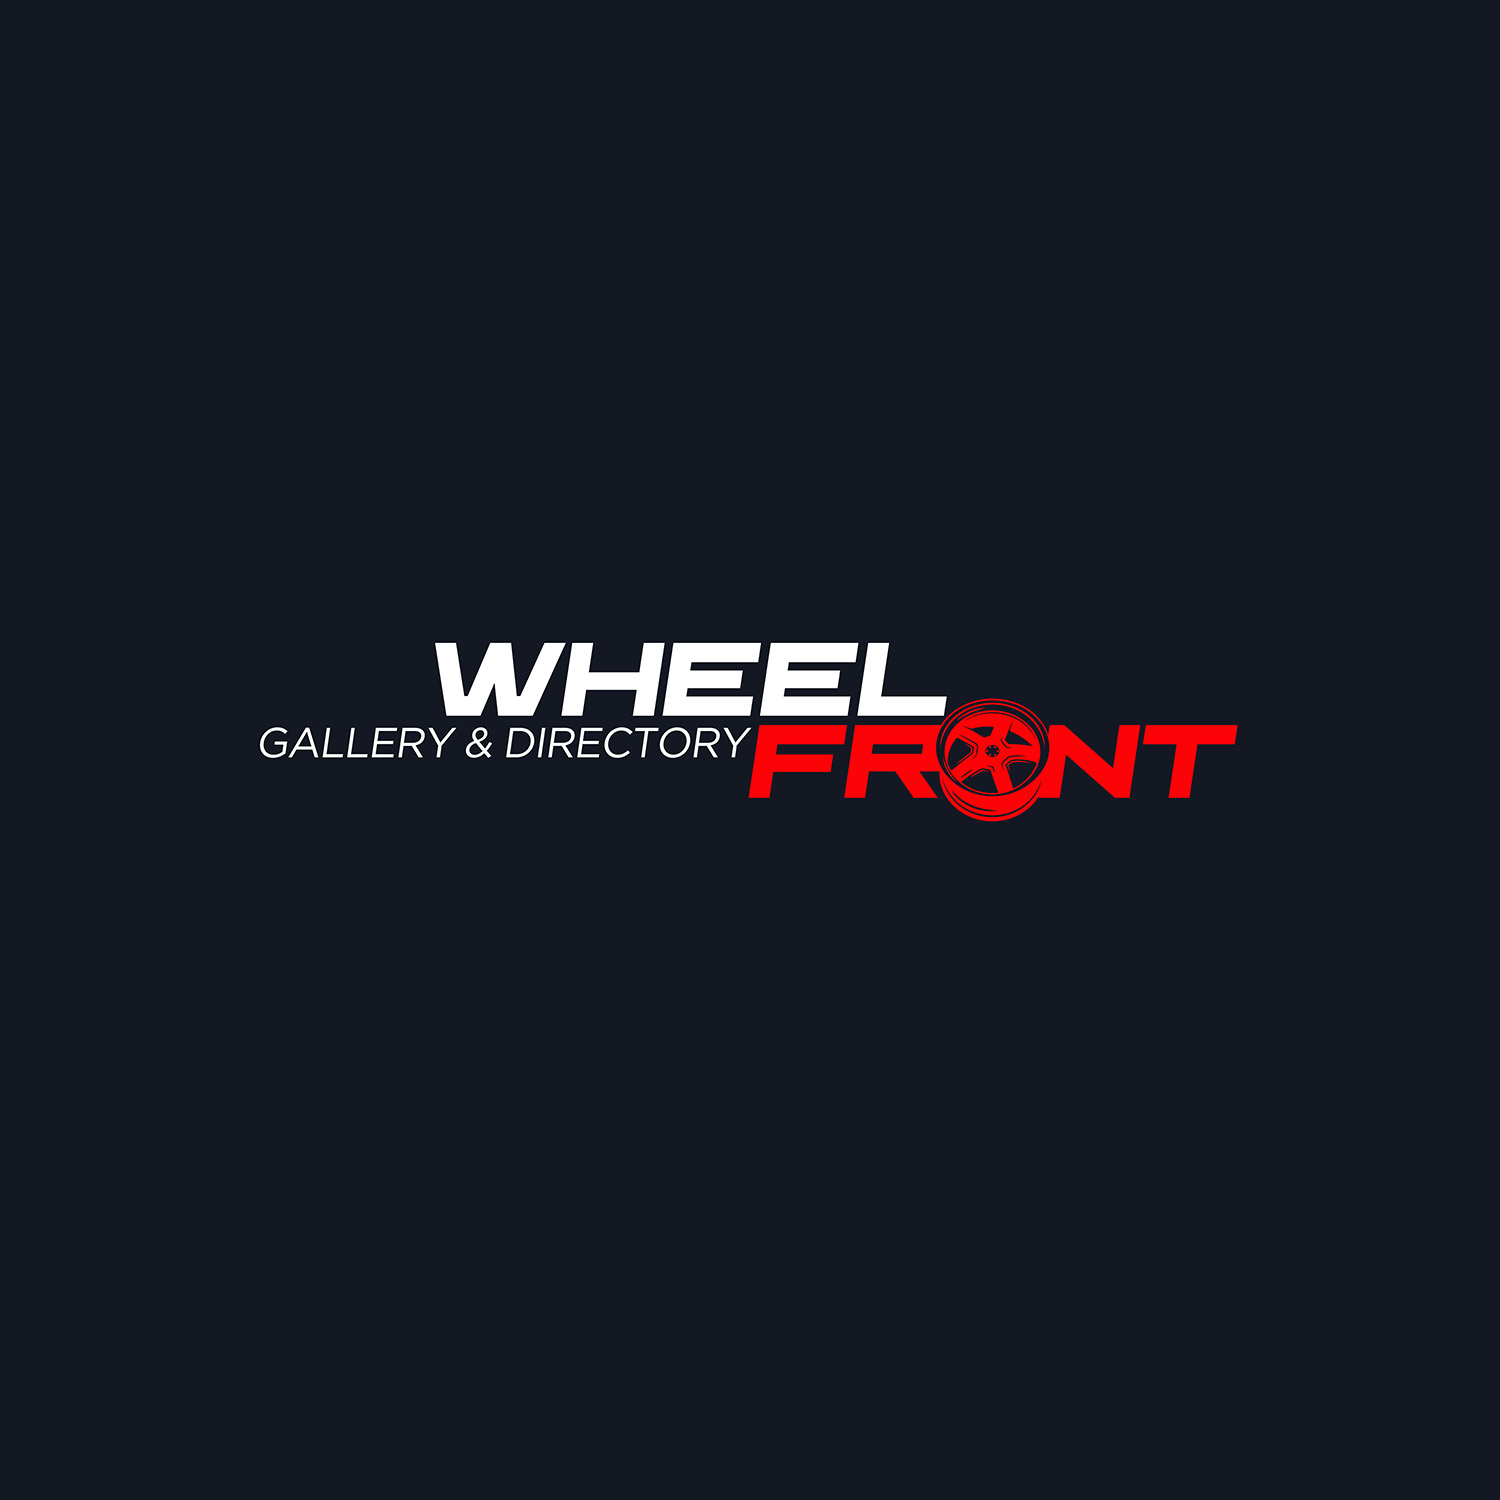 Wheels Gallery